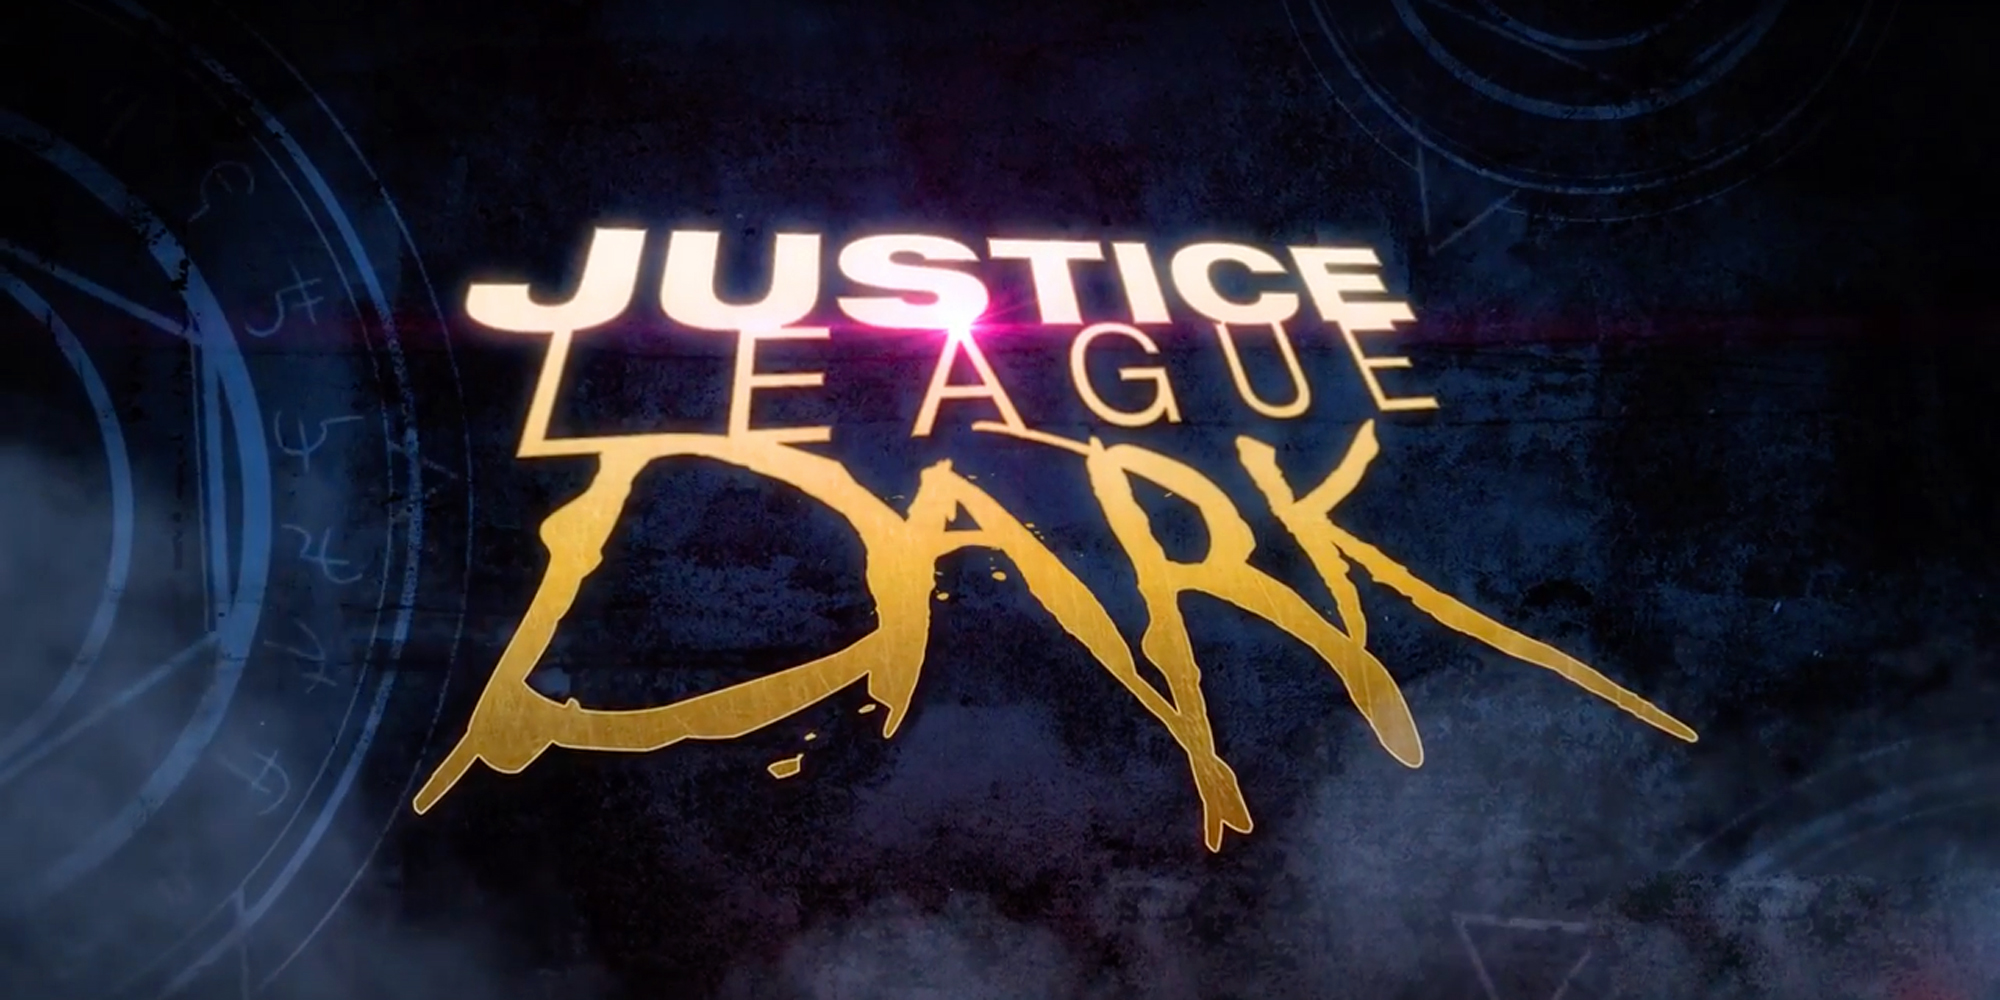  Justice League Dark, nouvelle bande-annonce